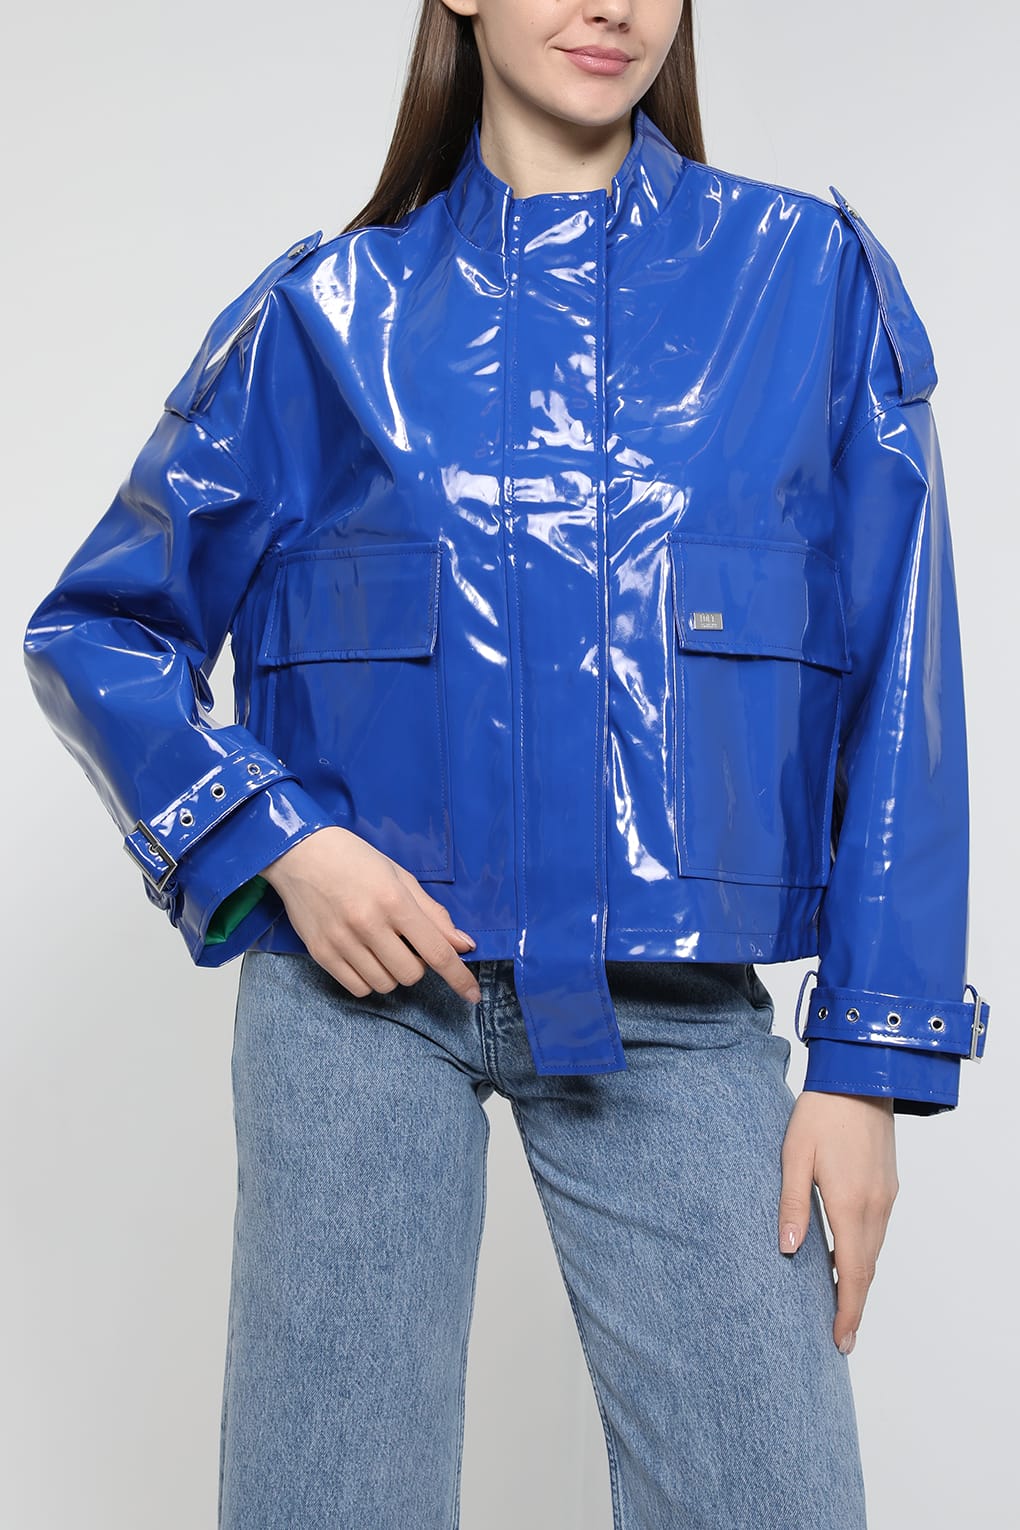 Кожаная куртка женская Loft LF2032892 голубая S